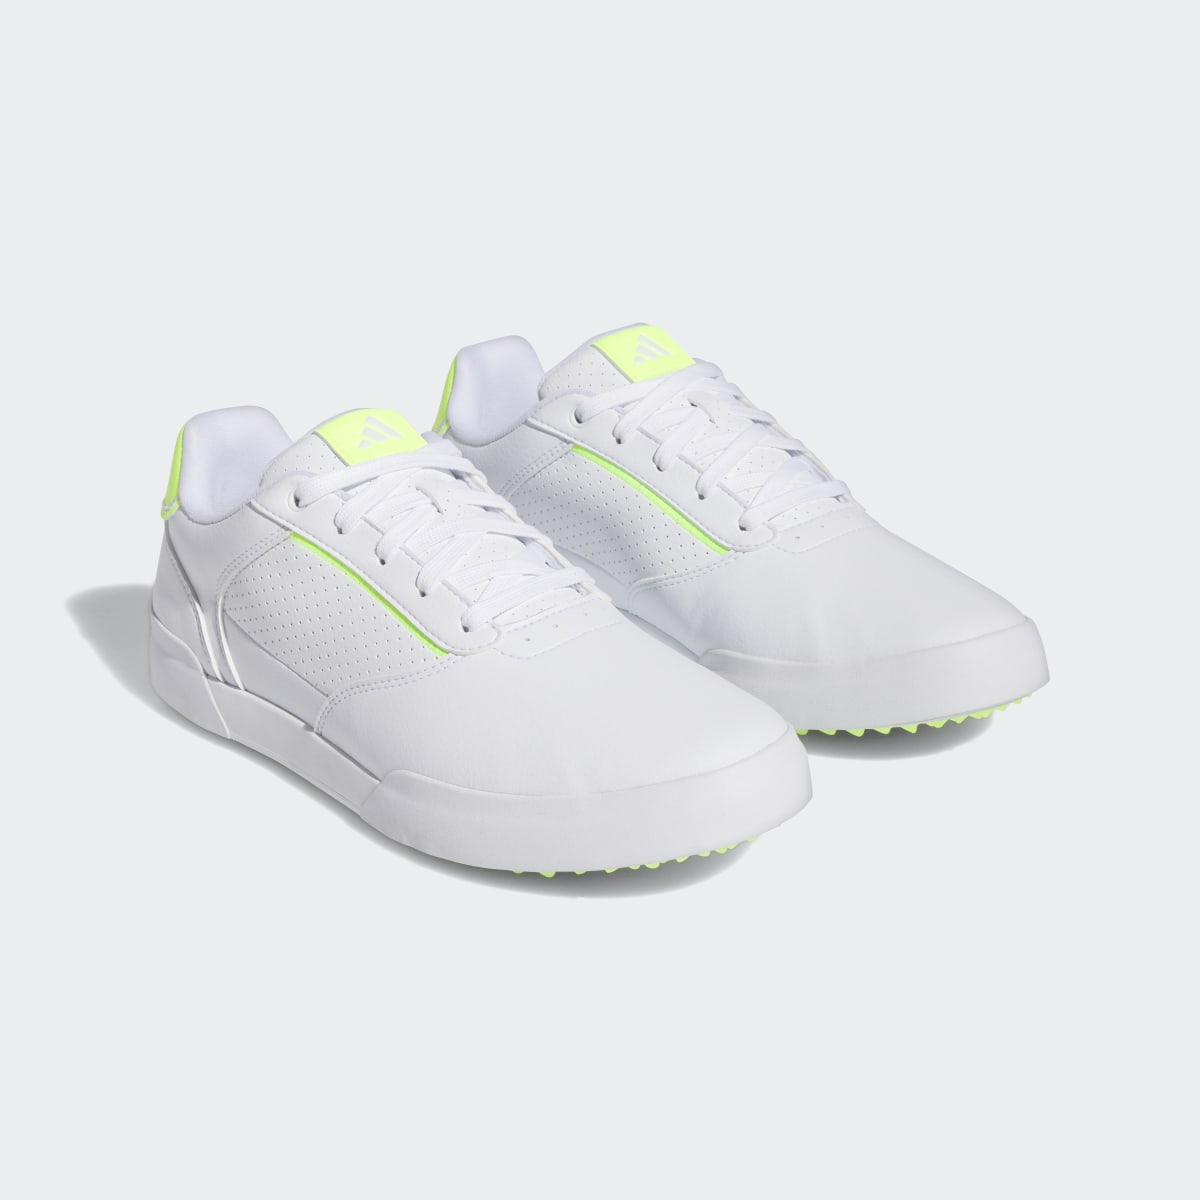 Adidas Retrocross Spikeless Golf Shoes. 5